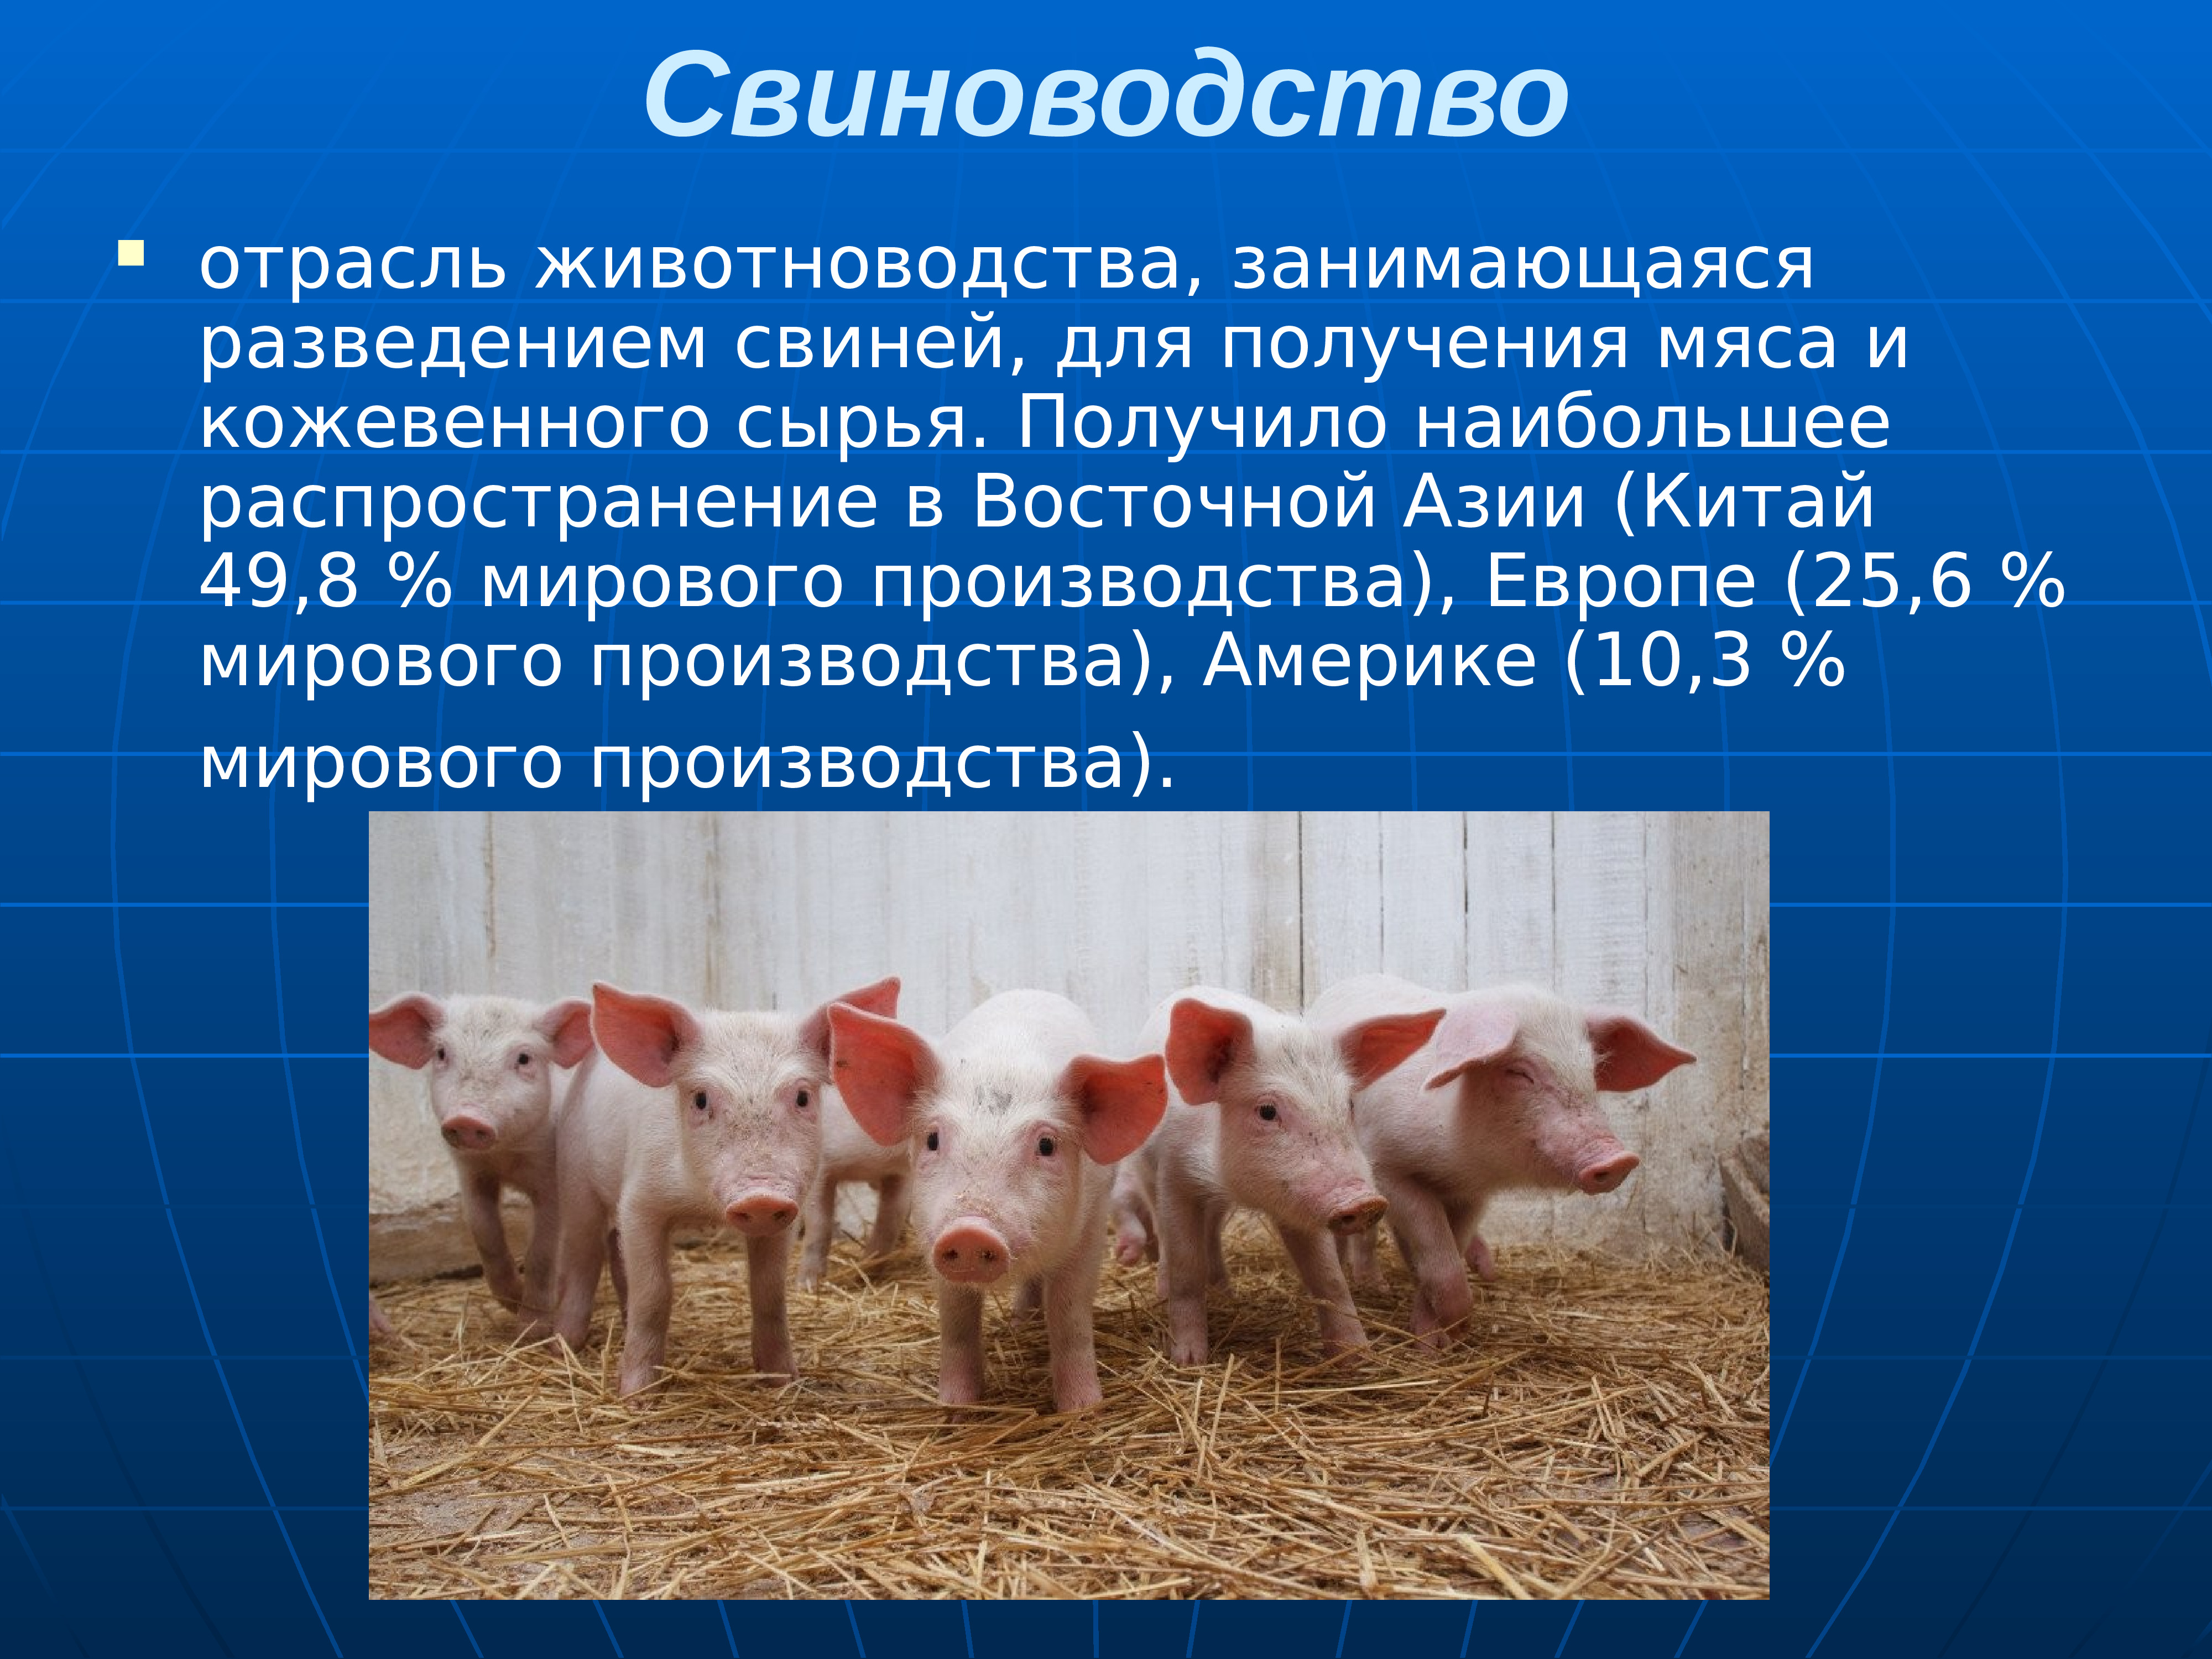 Принадлежащий свинье. Сельское хозяйство животноводство. Животноводство презентация. Отрасли животноводства. Животноводство свиноводство.